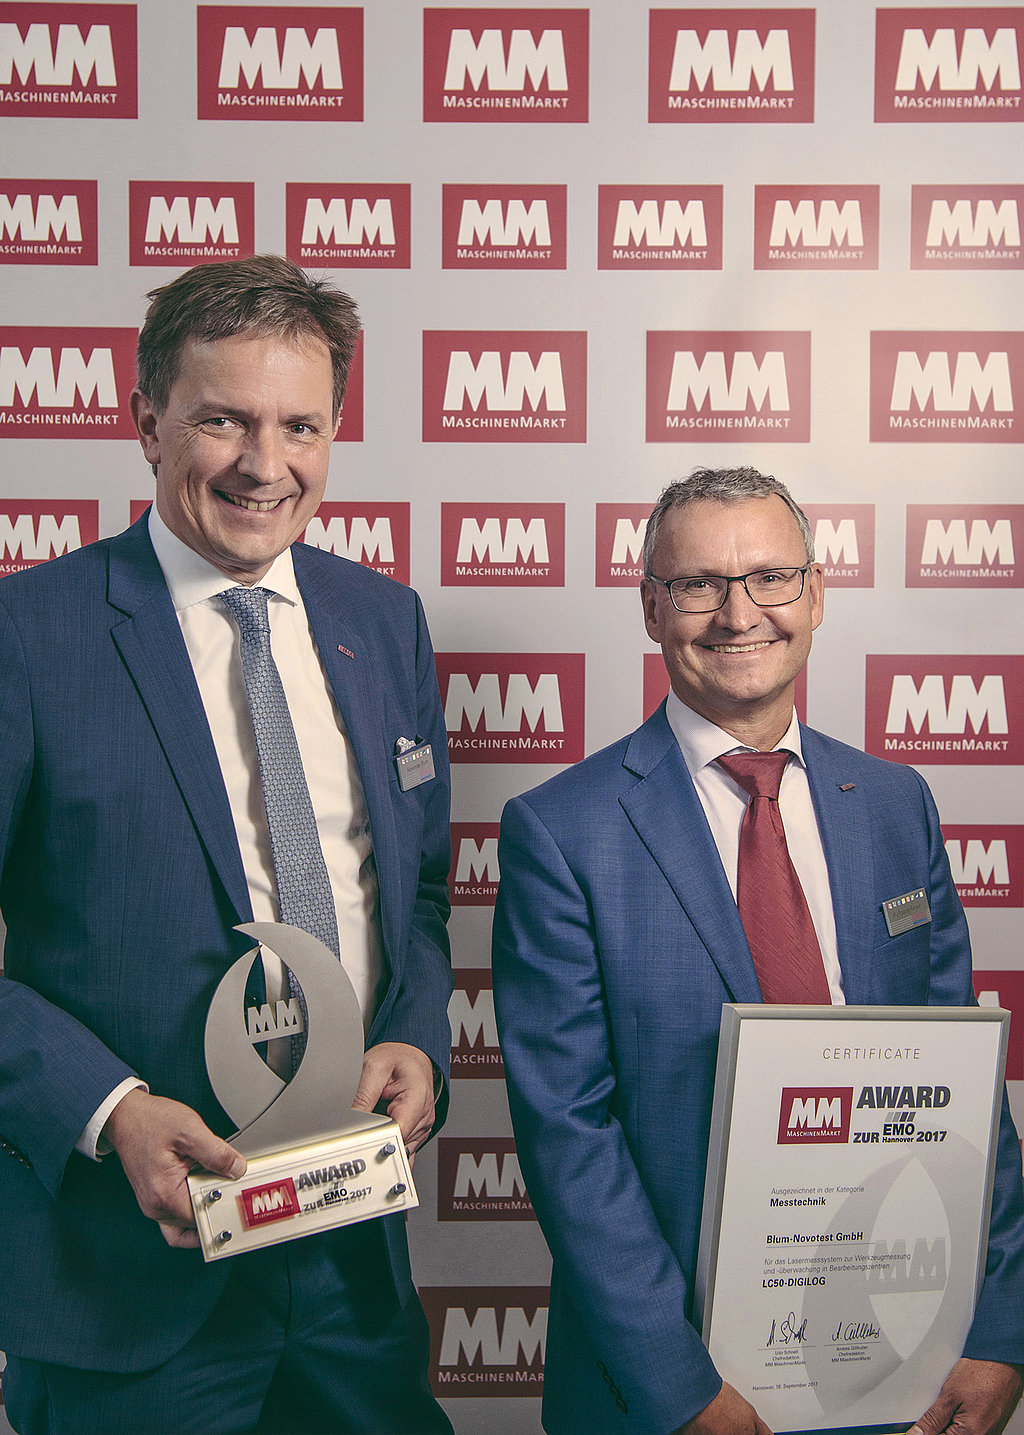 Alexander Blum präsentiert den Innovationspreis MM Award auf der EMO 2017 Hannover